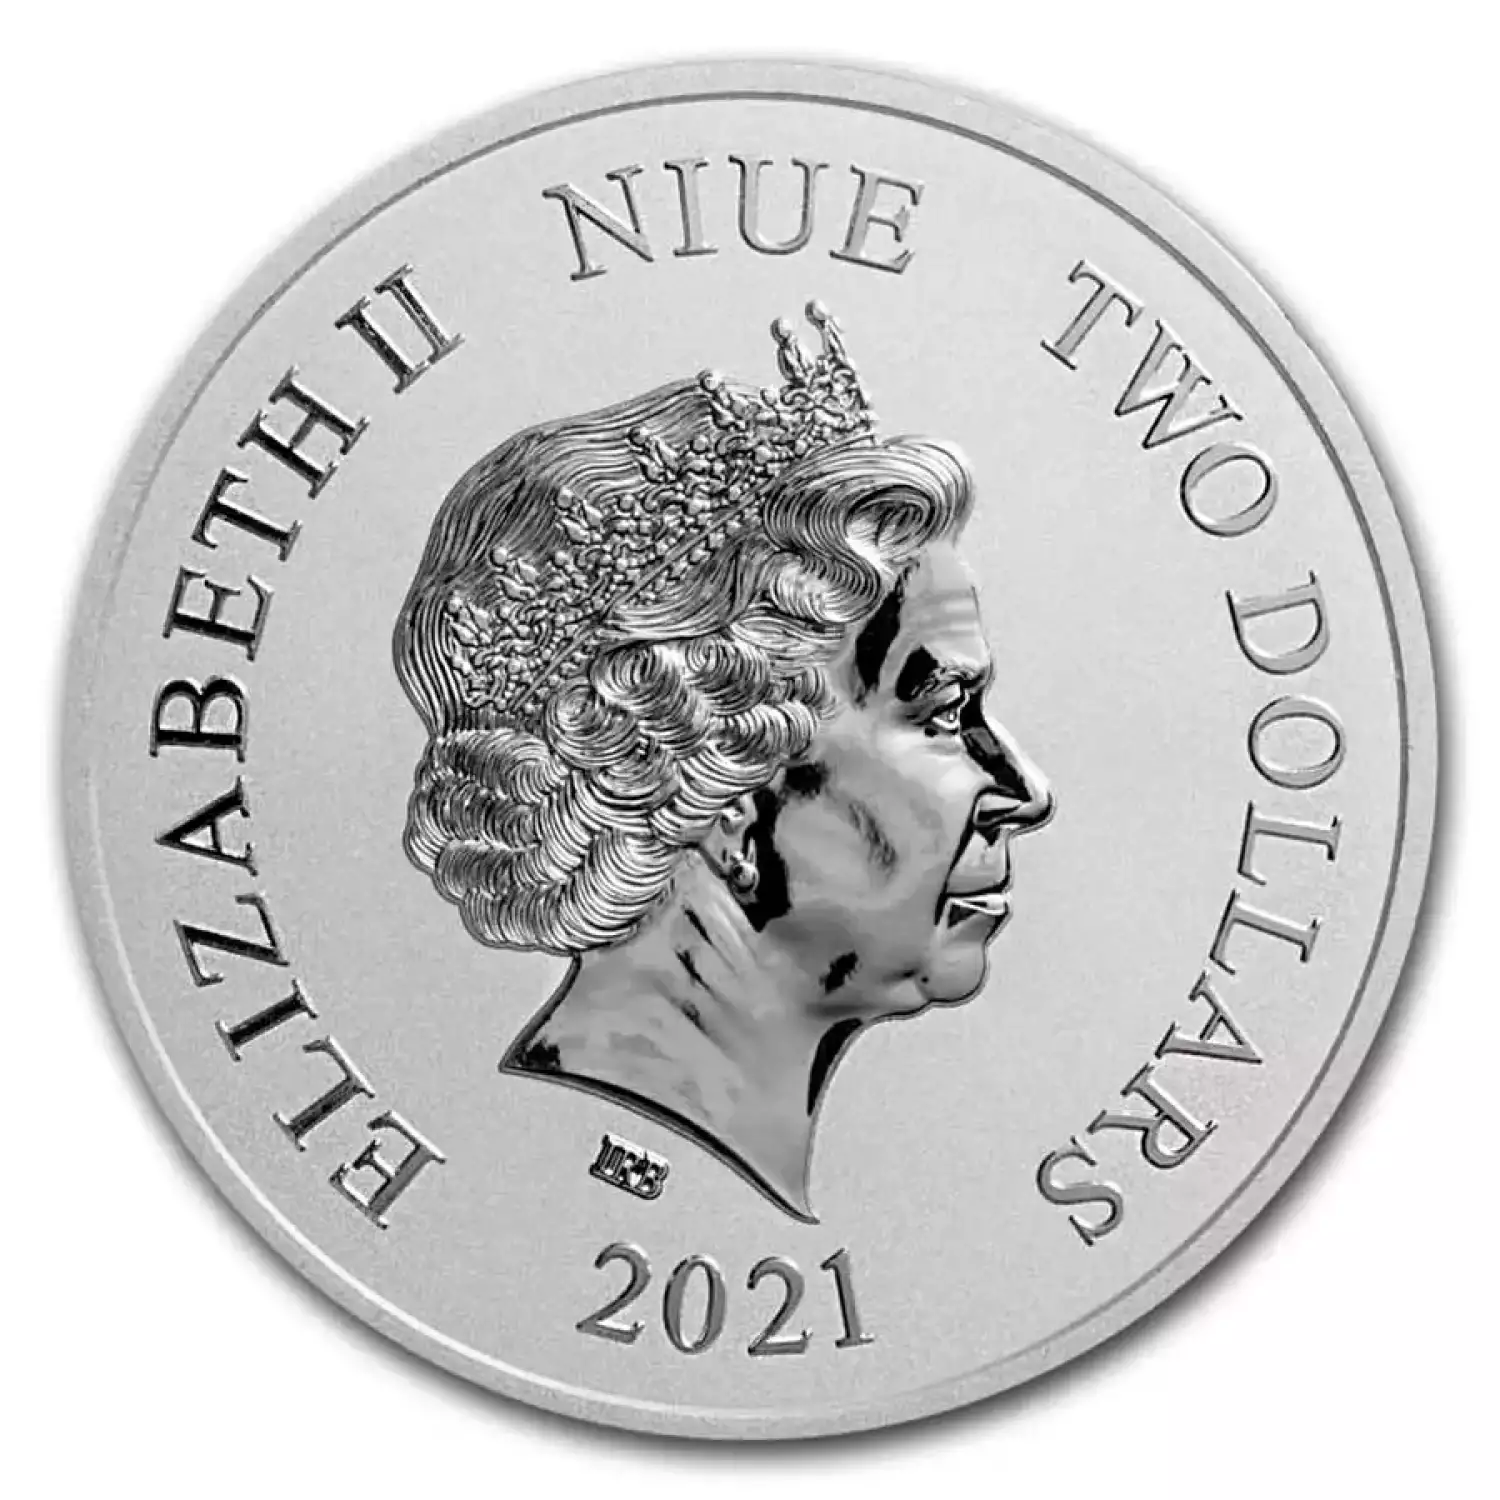 2021 Niue 1 oz Silver $2 Disney Mickey Mouse Christmas Coin (2)